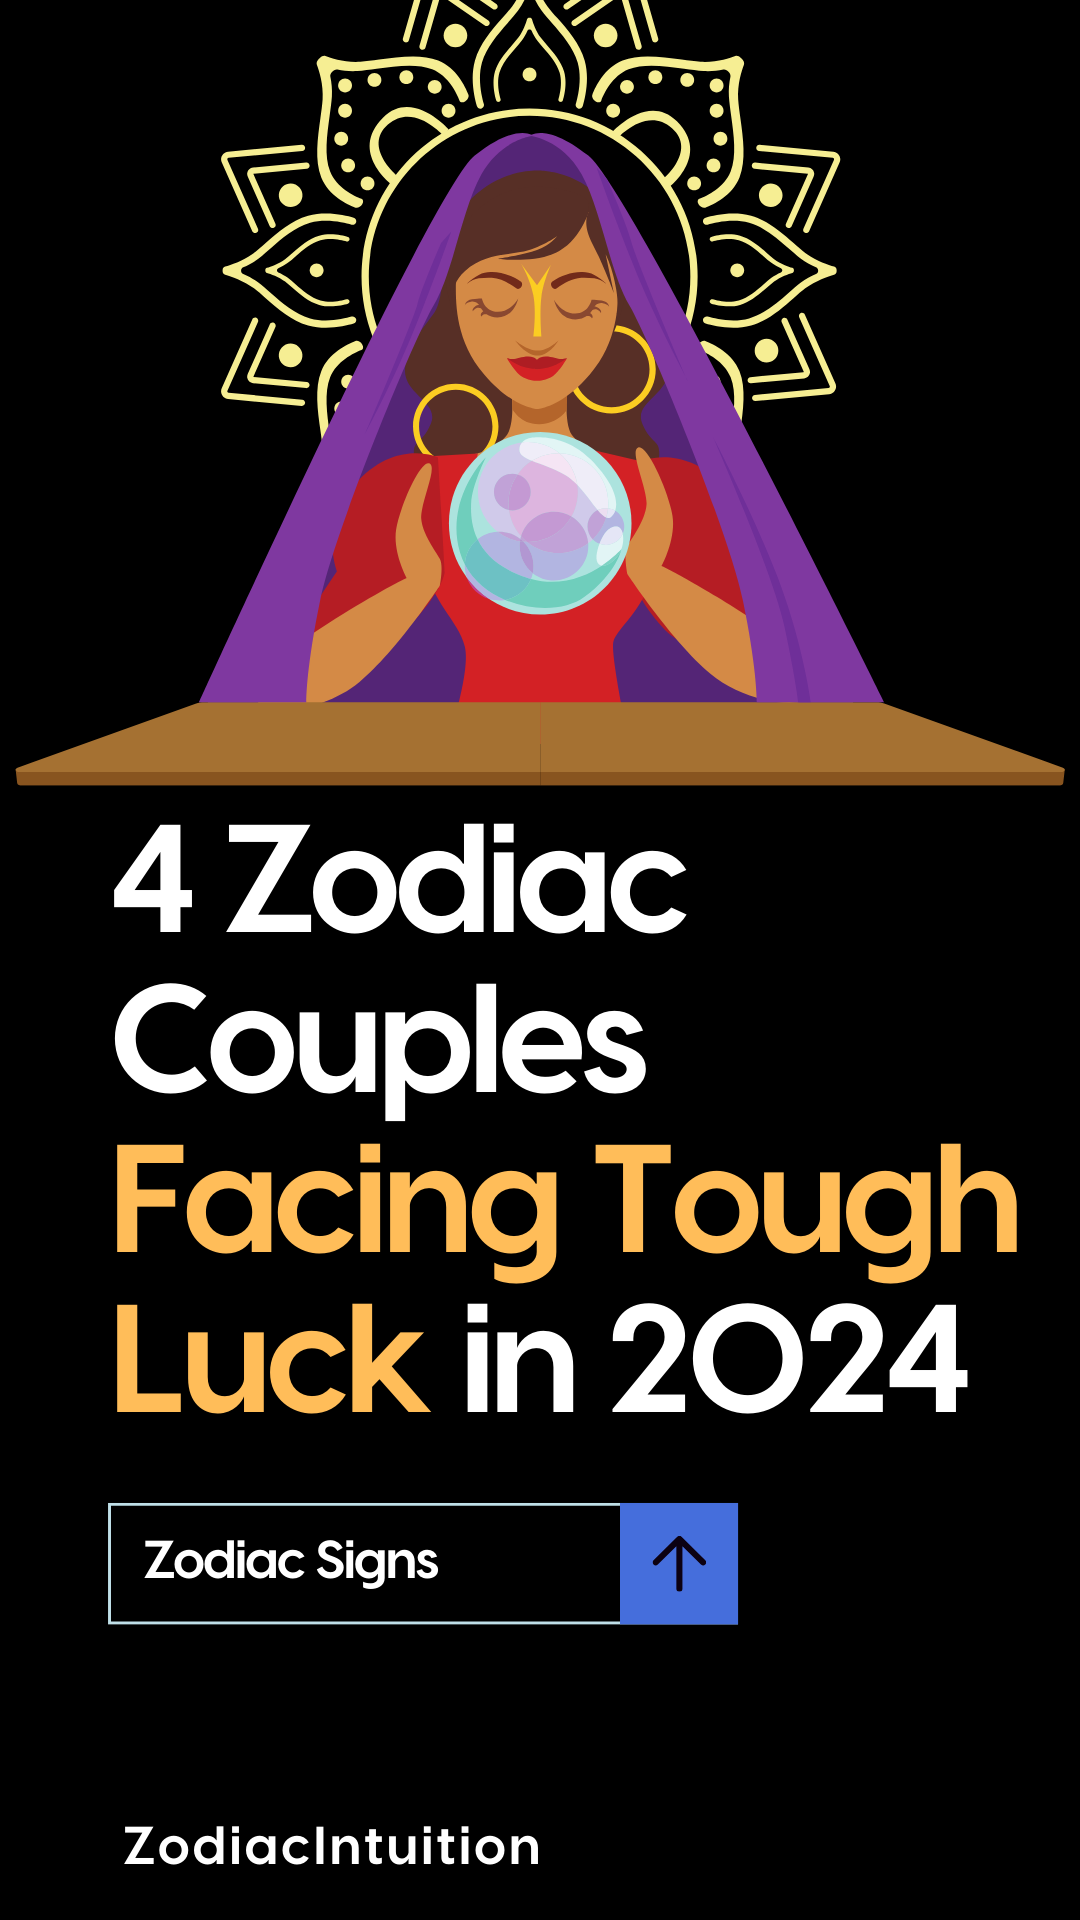 4 Zodiac Couples Facing Tough Luck in 2024